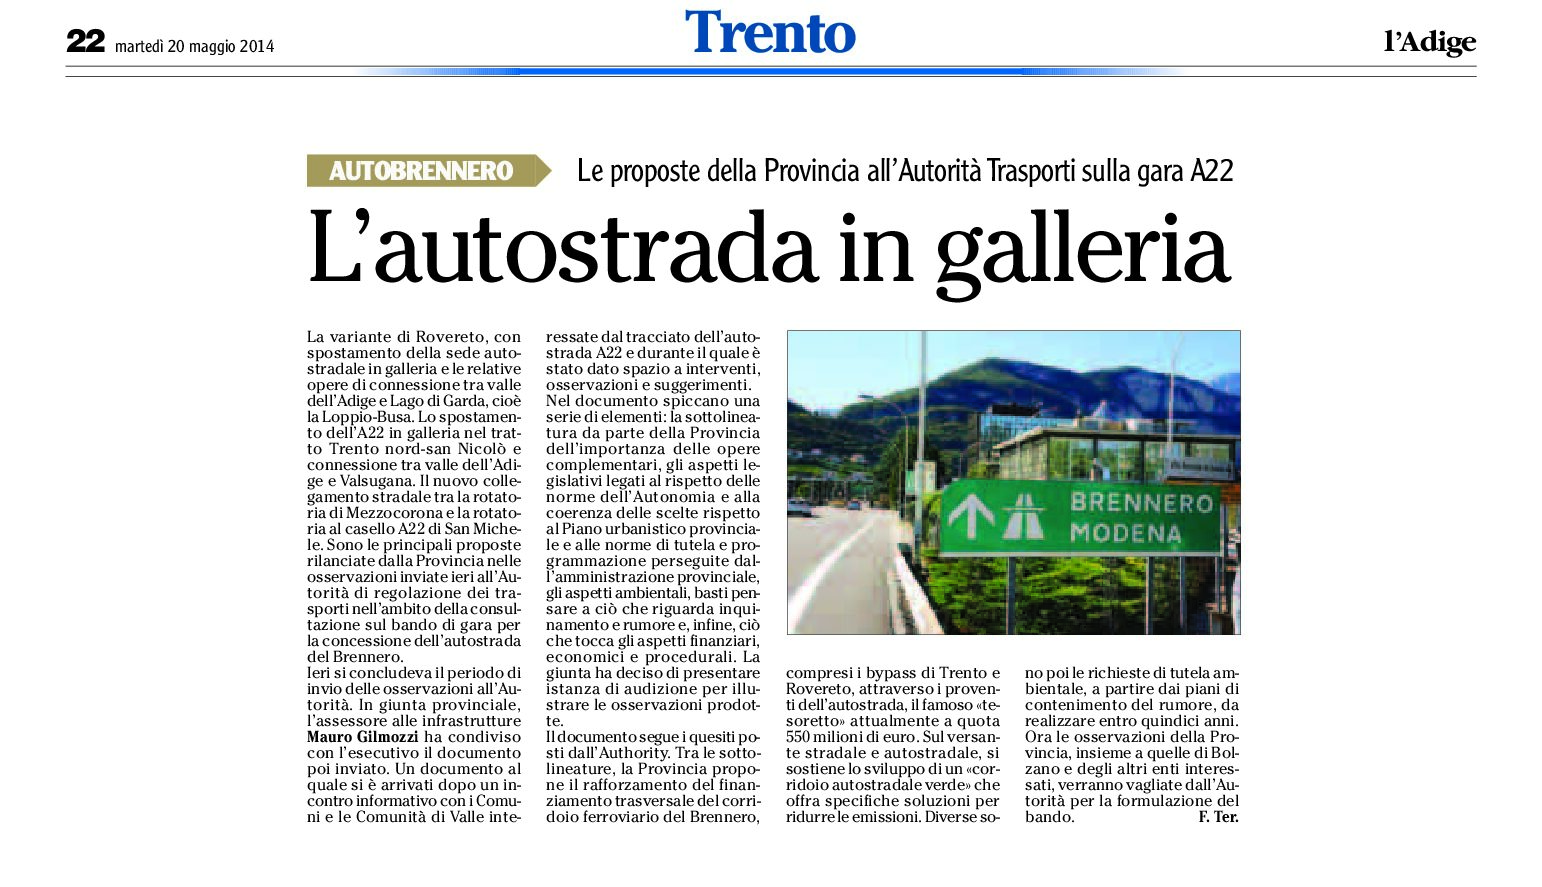 La Provincia propone lo spostamento dell’A22 in galleria nel tratto Trento nord – san Nicolò e connessione tra valle dell’Adige e Valsugana